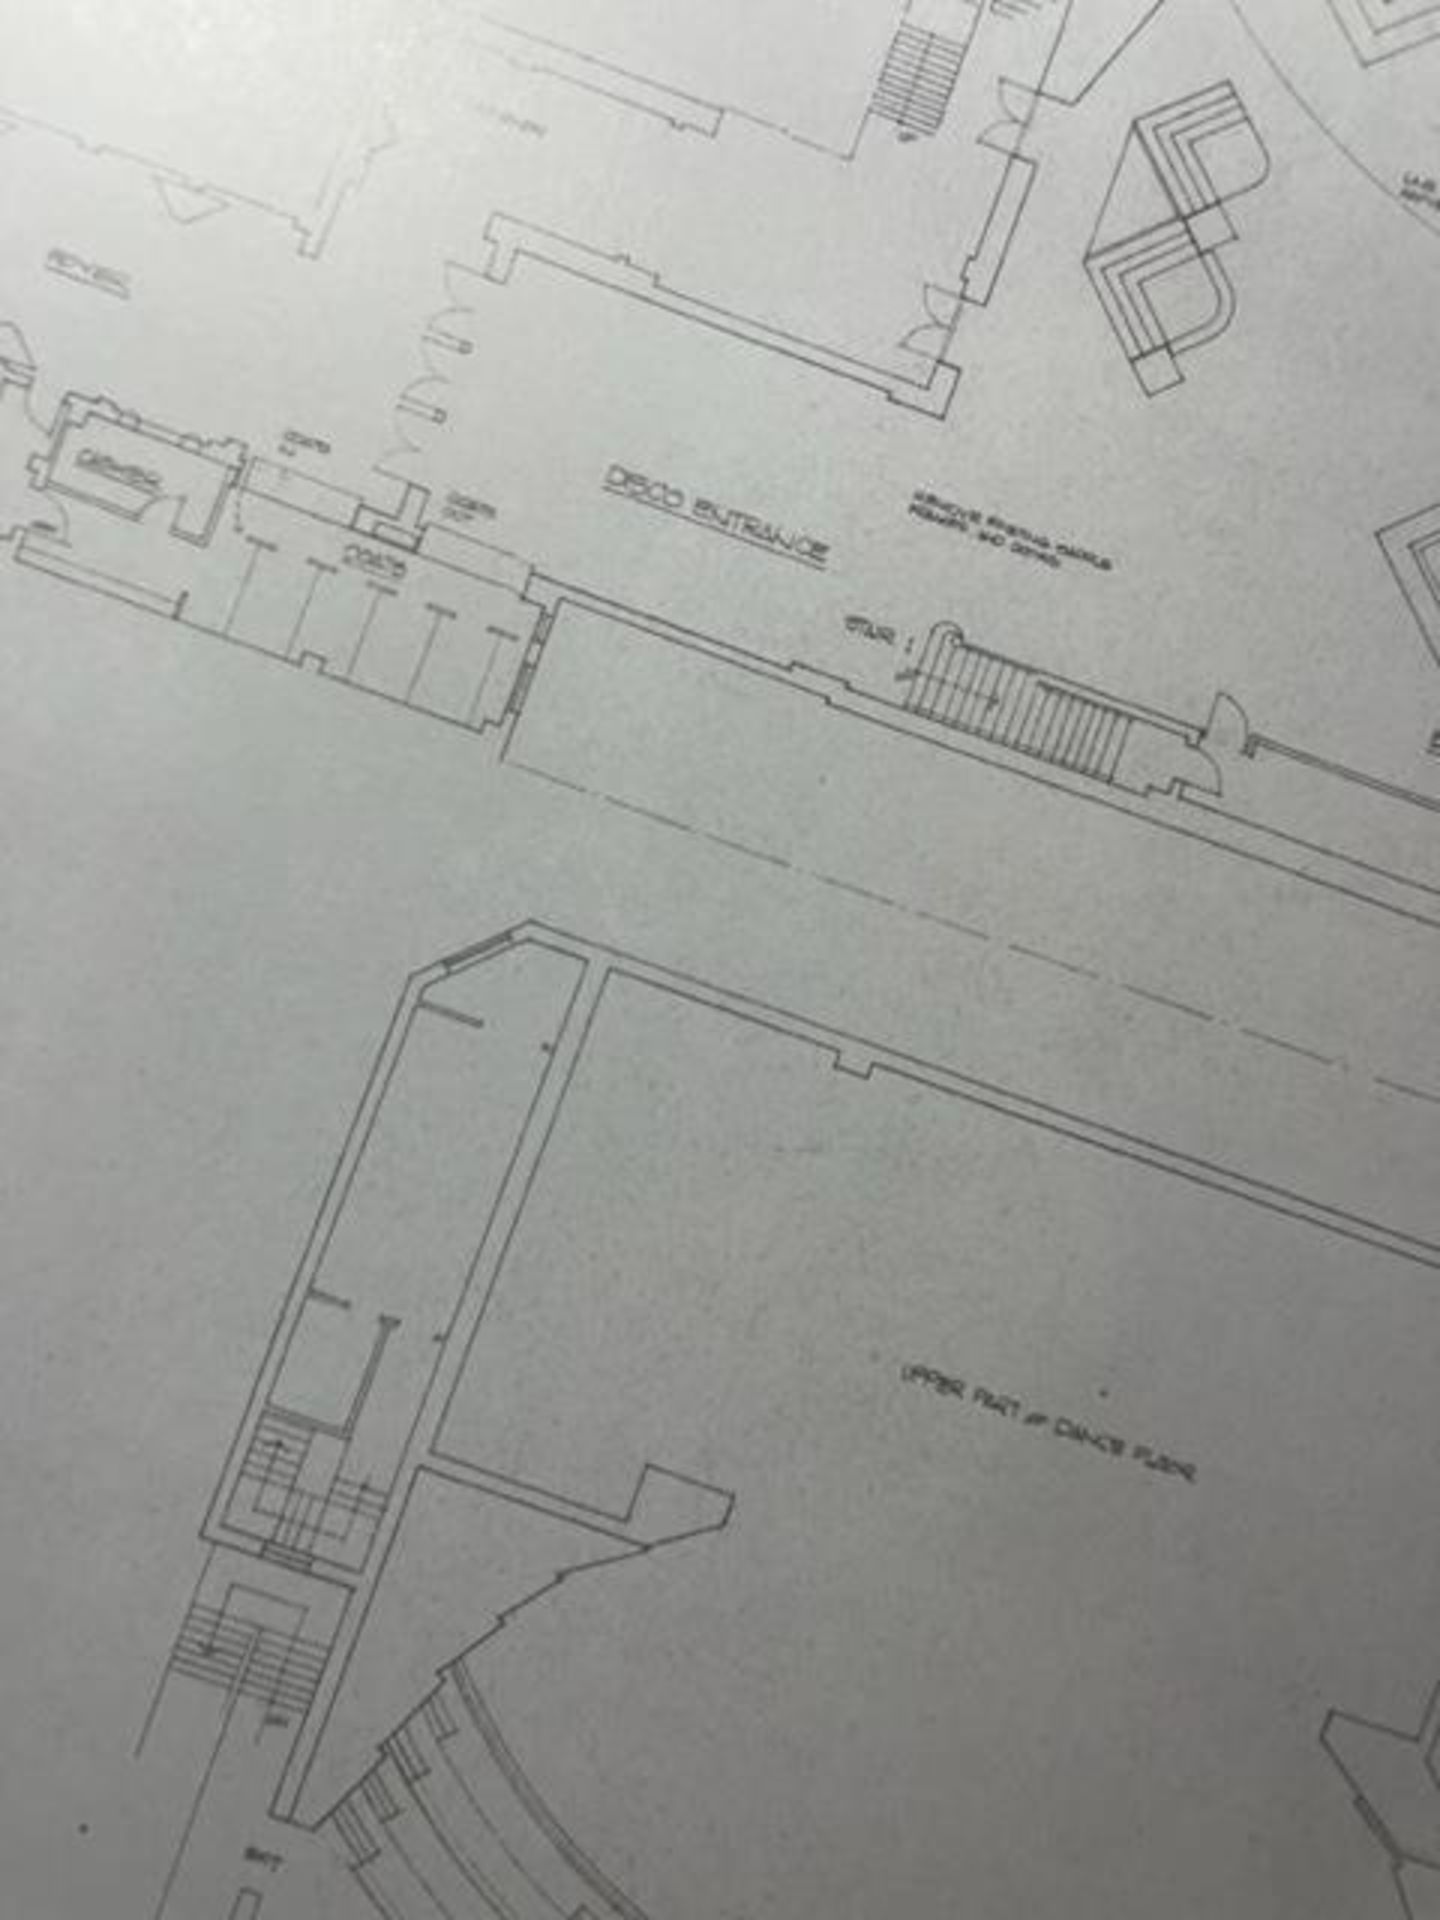 Studio 54 "Floor Plans" Print. - Image 6 of 6